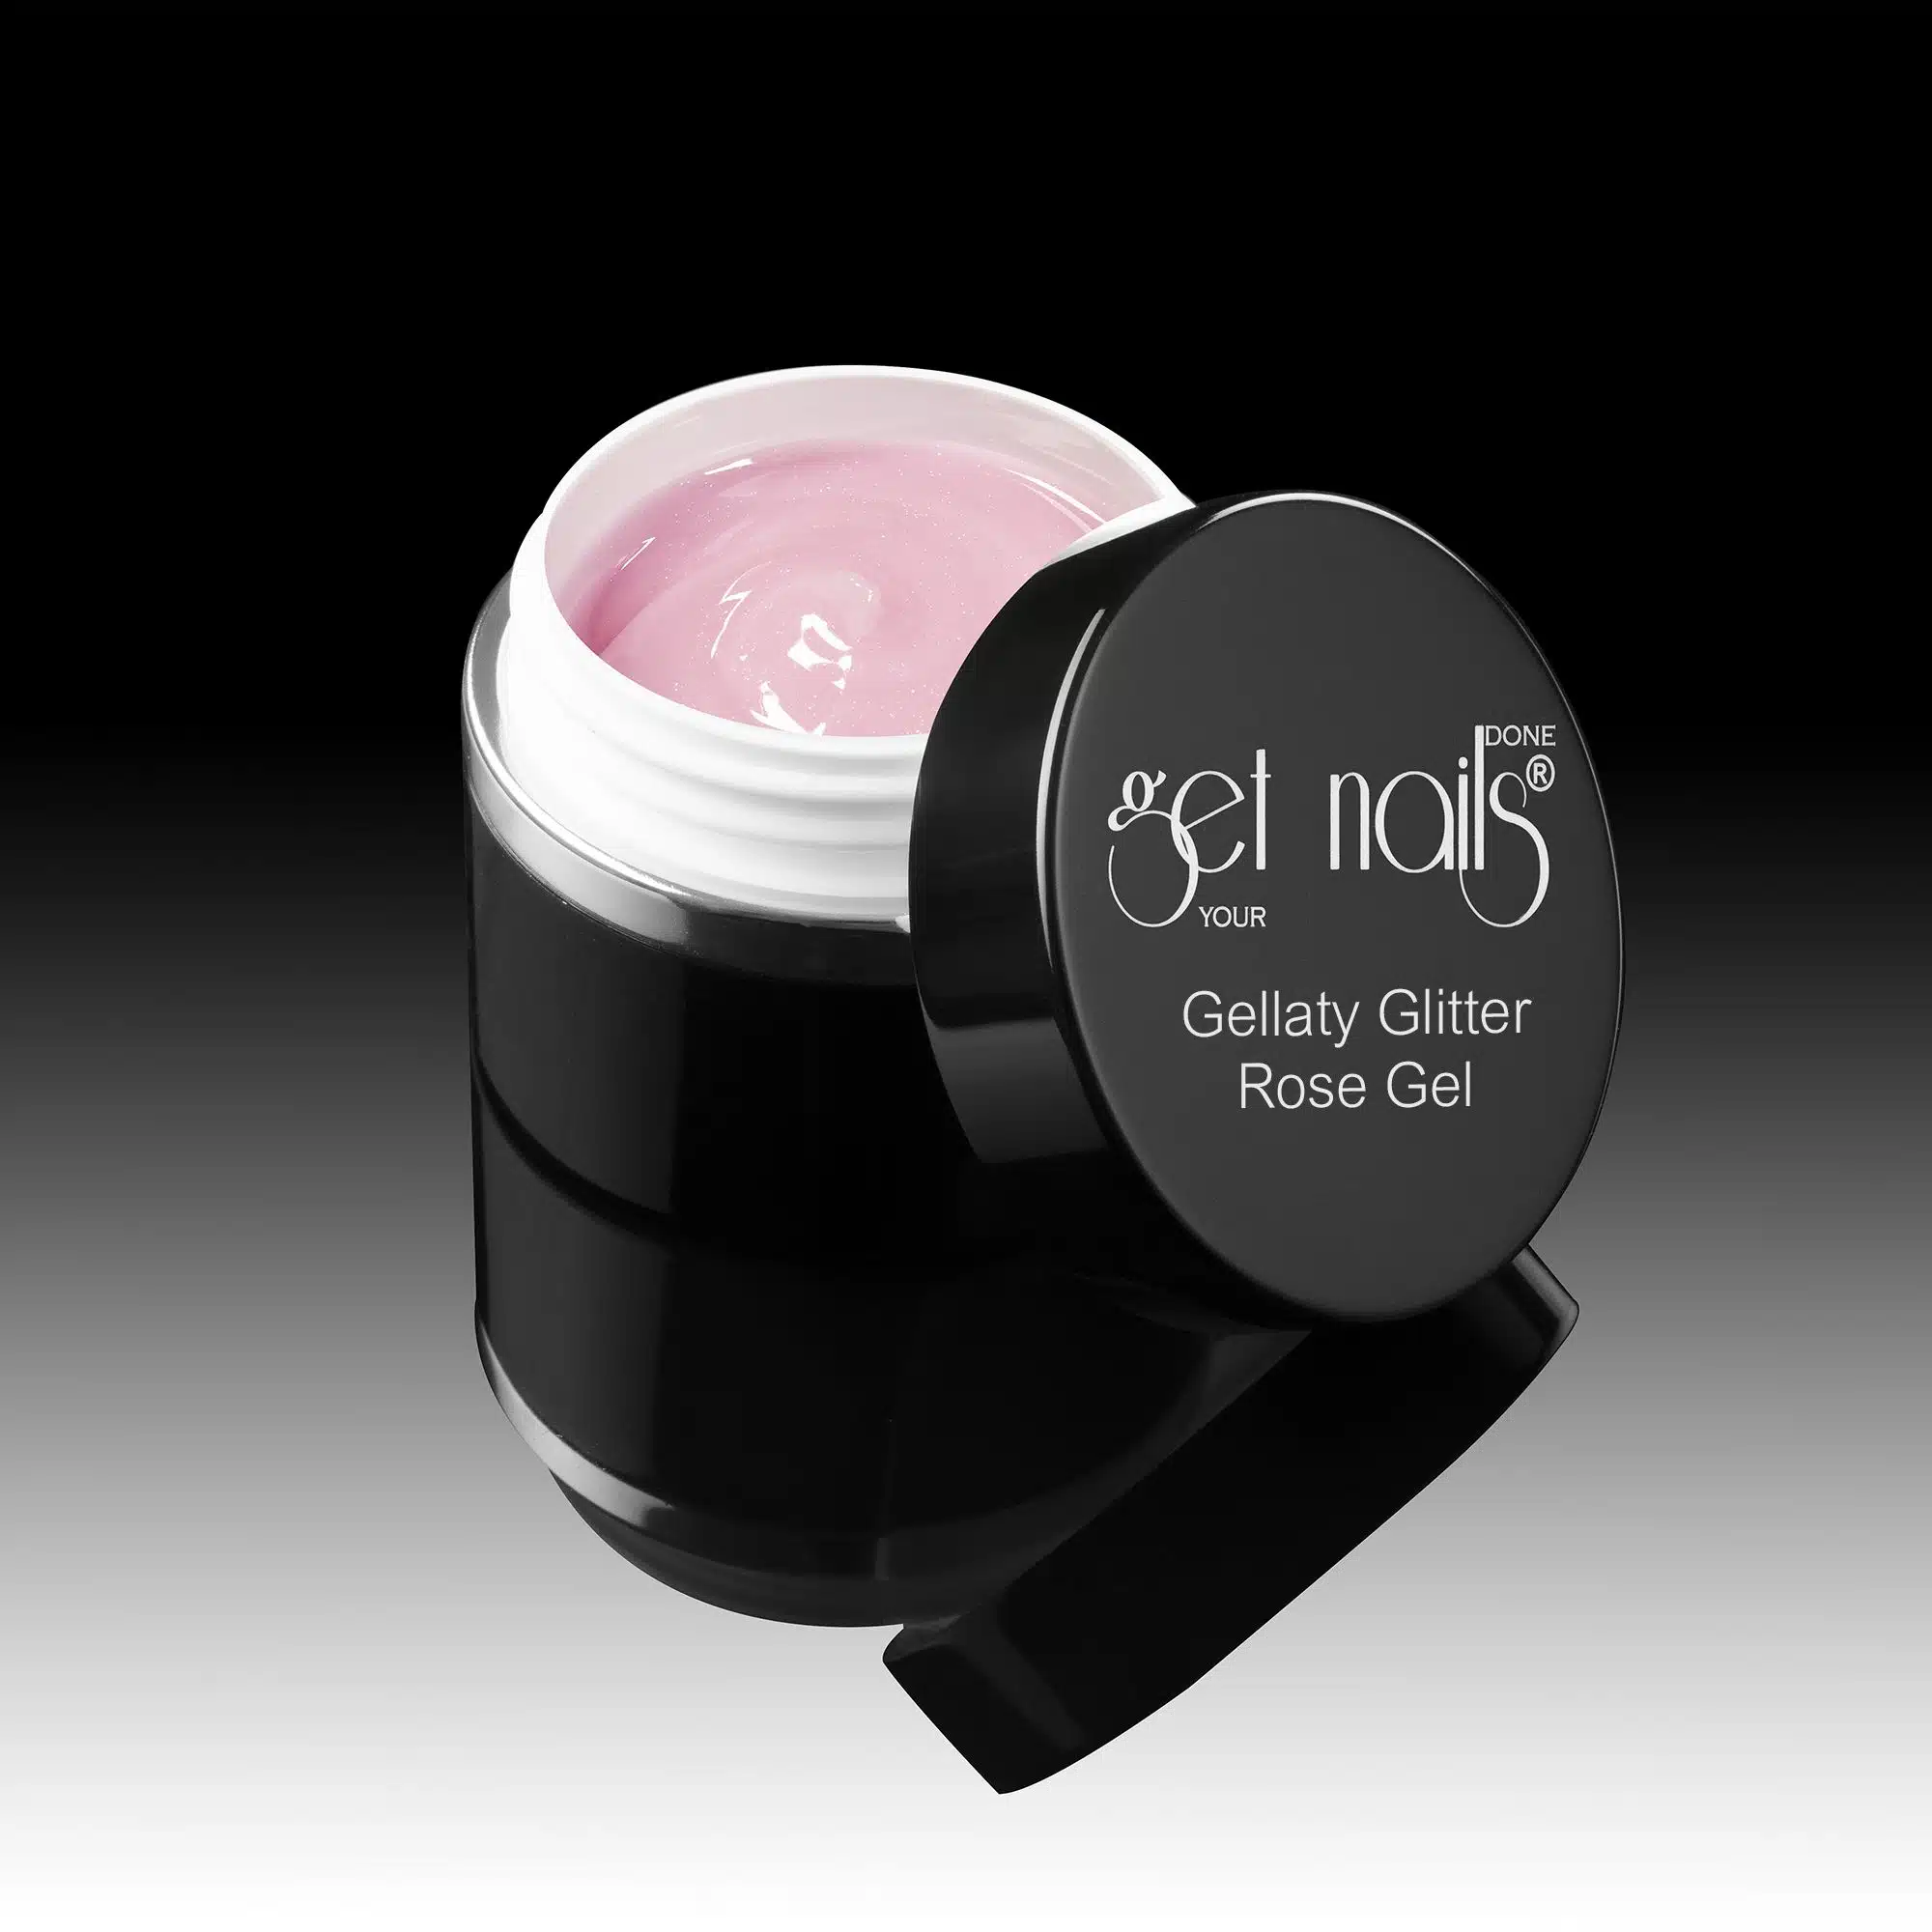 Get Nails Austria - Gellaty Glitter Rose Gel 50g